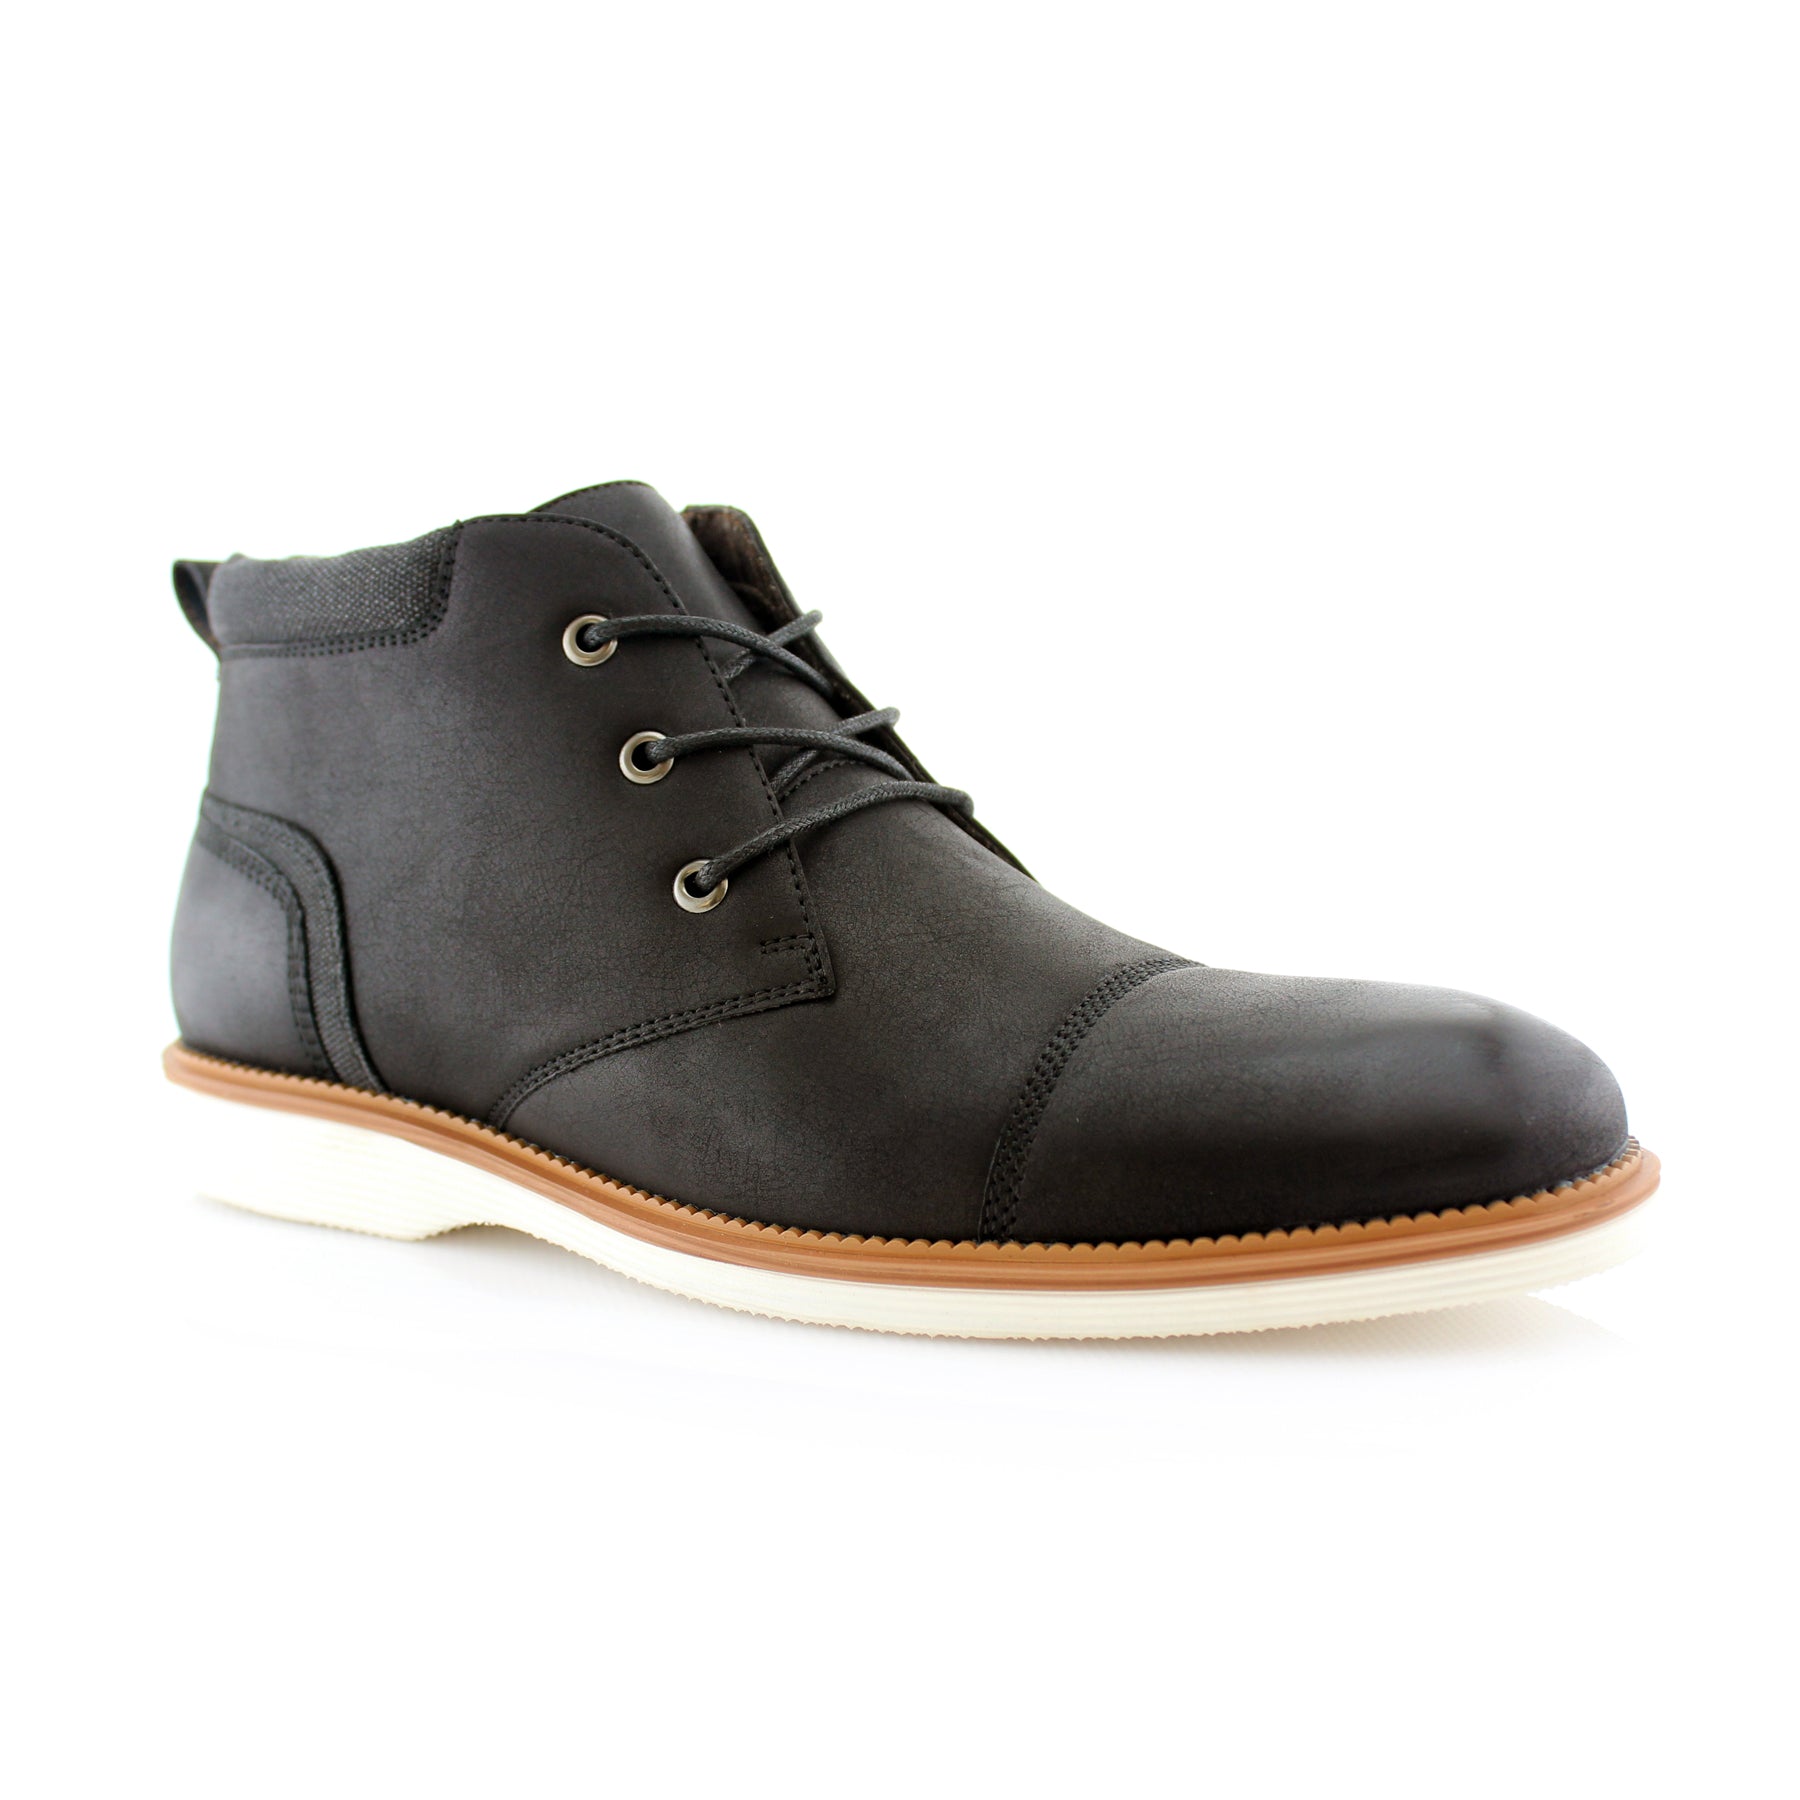 Cap-Toe Chukka Boots | Sammy by Ferro Aldo | Conal Footwear | Main Angle View